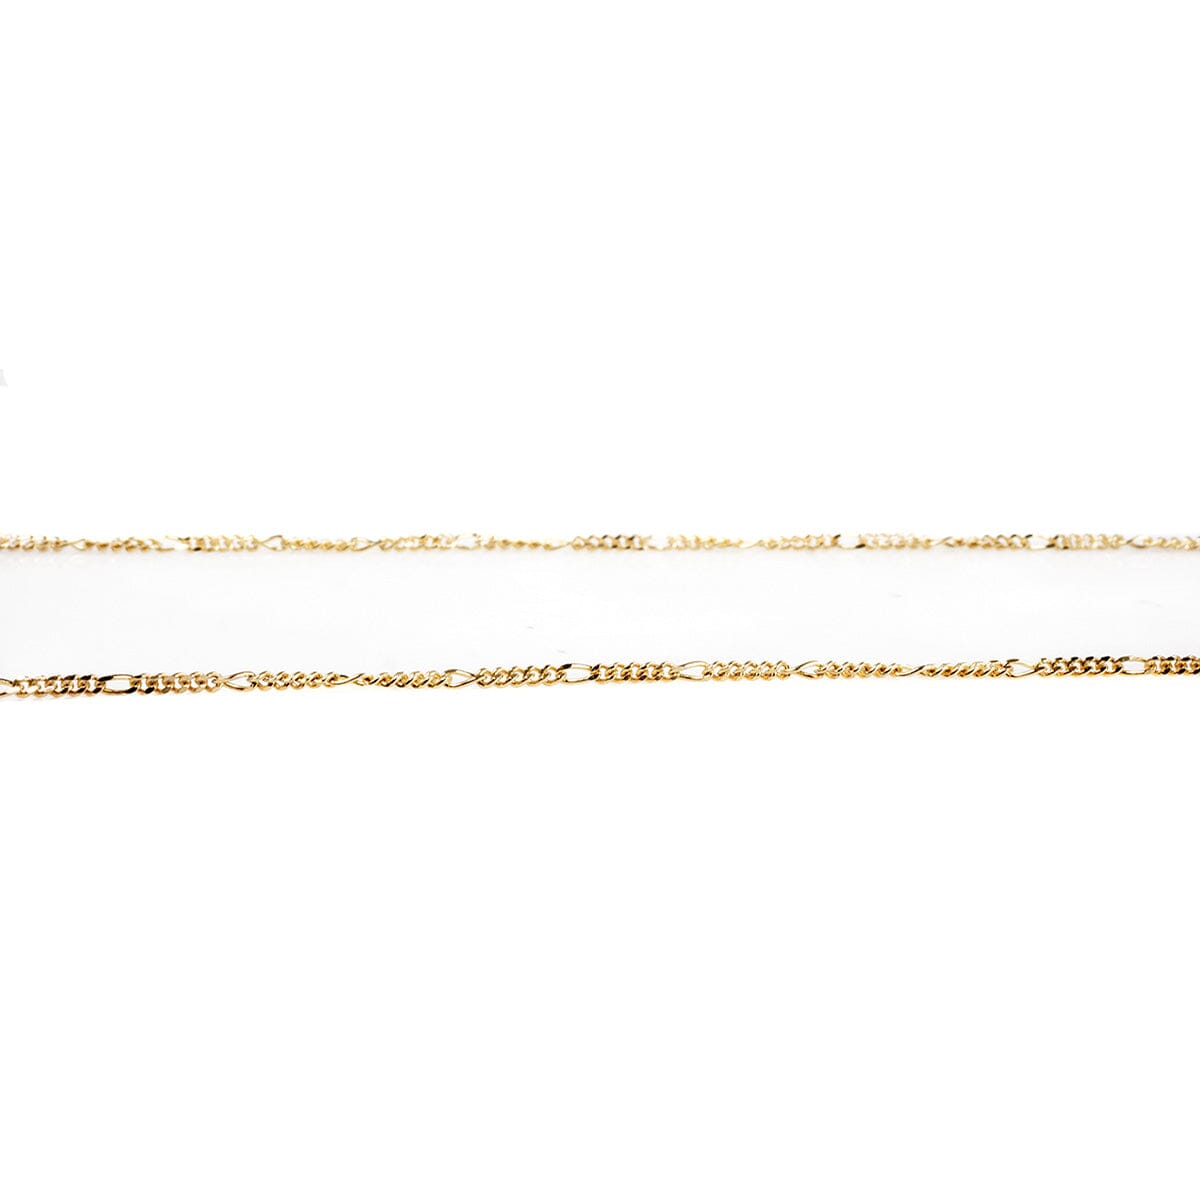 Great Lakes Boutique 14 k Gold Art Nouveau Diamond Necklace